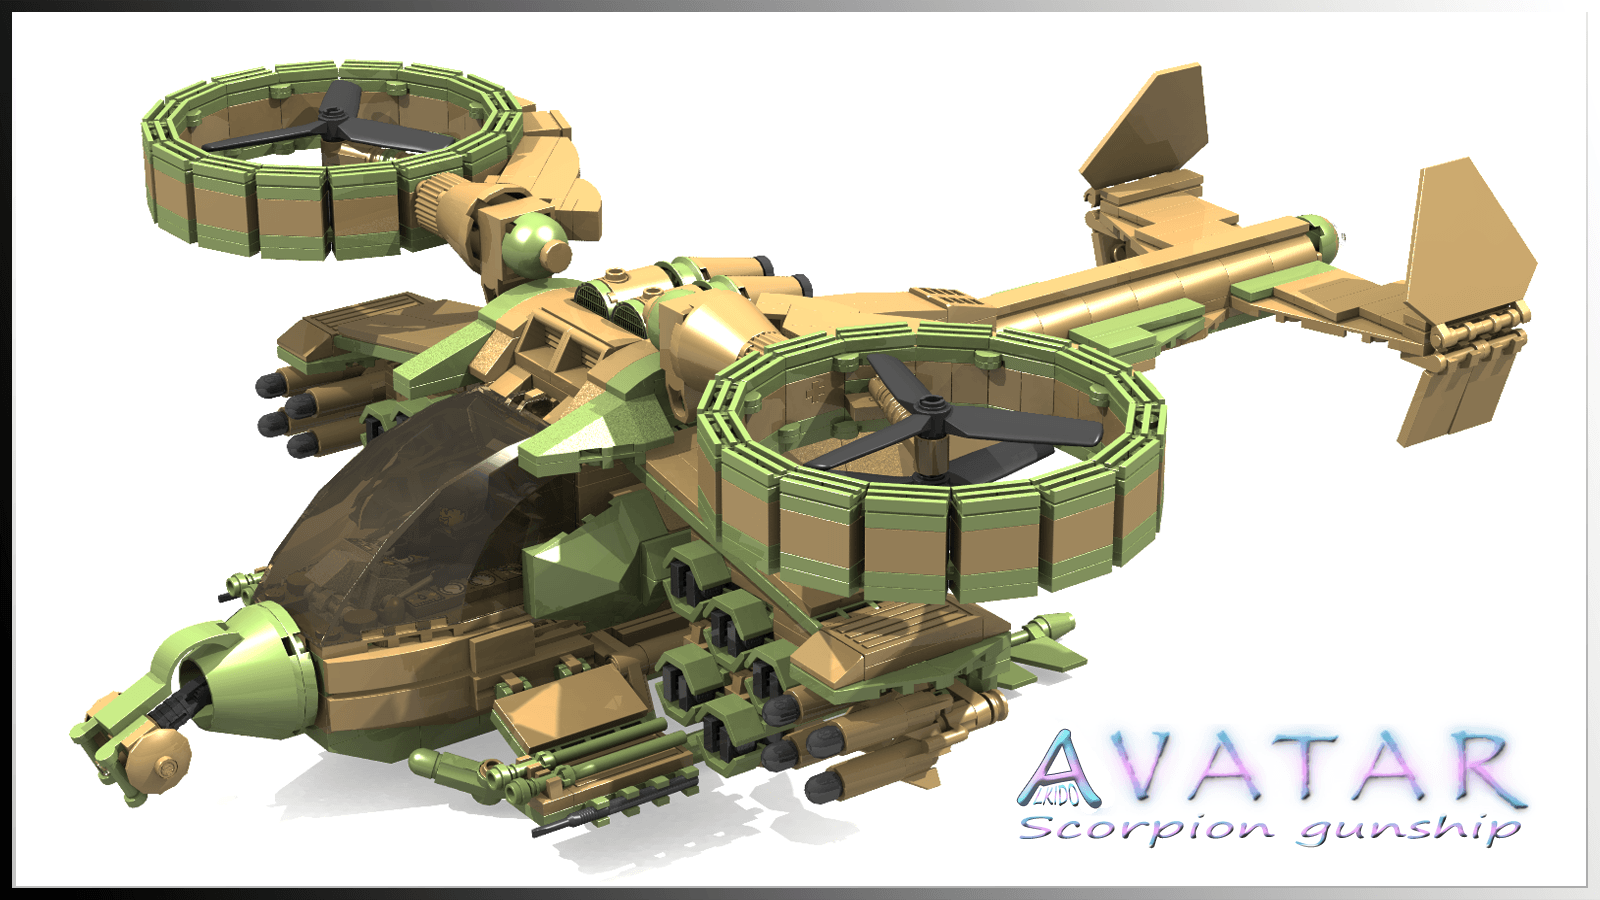 AVATAR -Scorpion Gunship